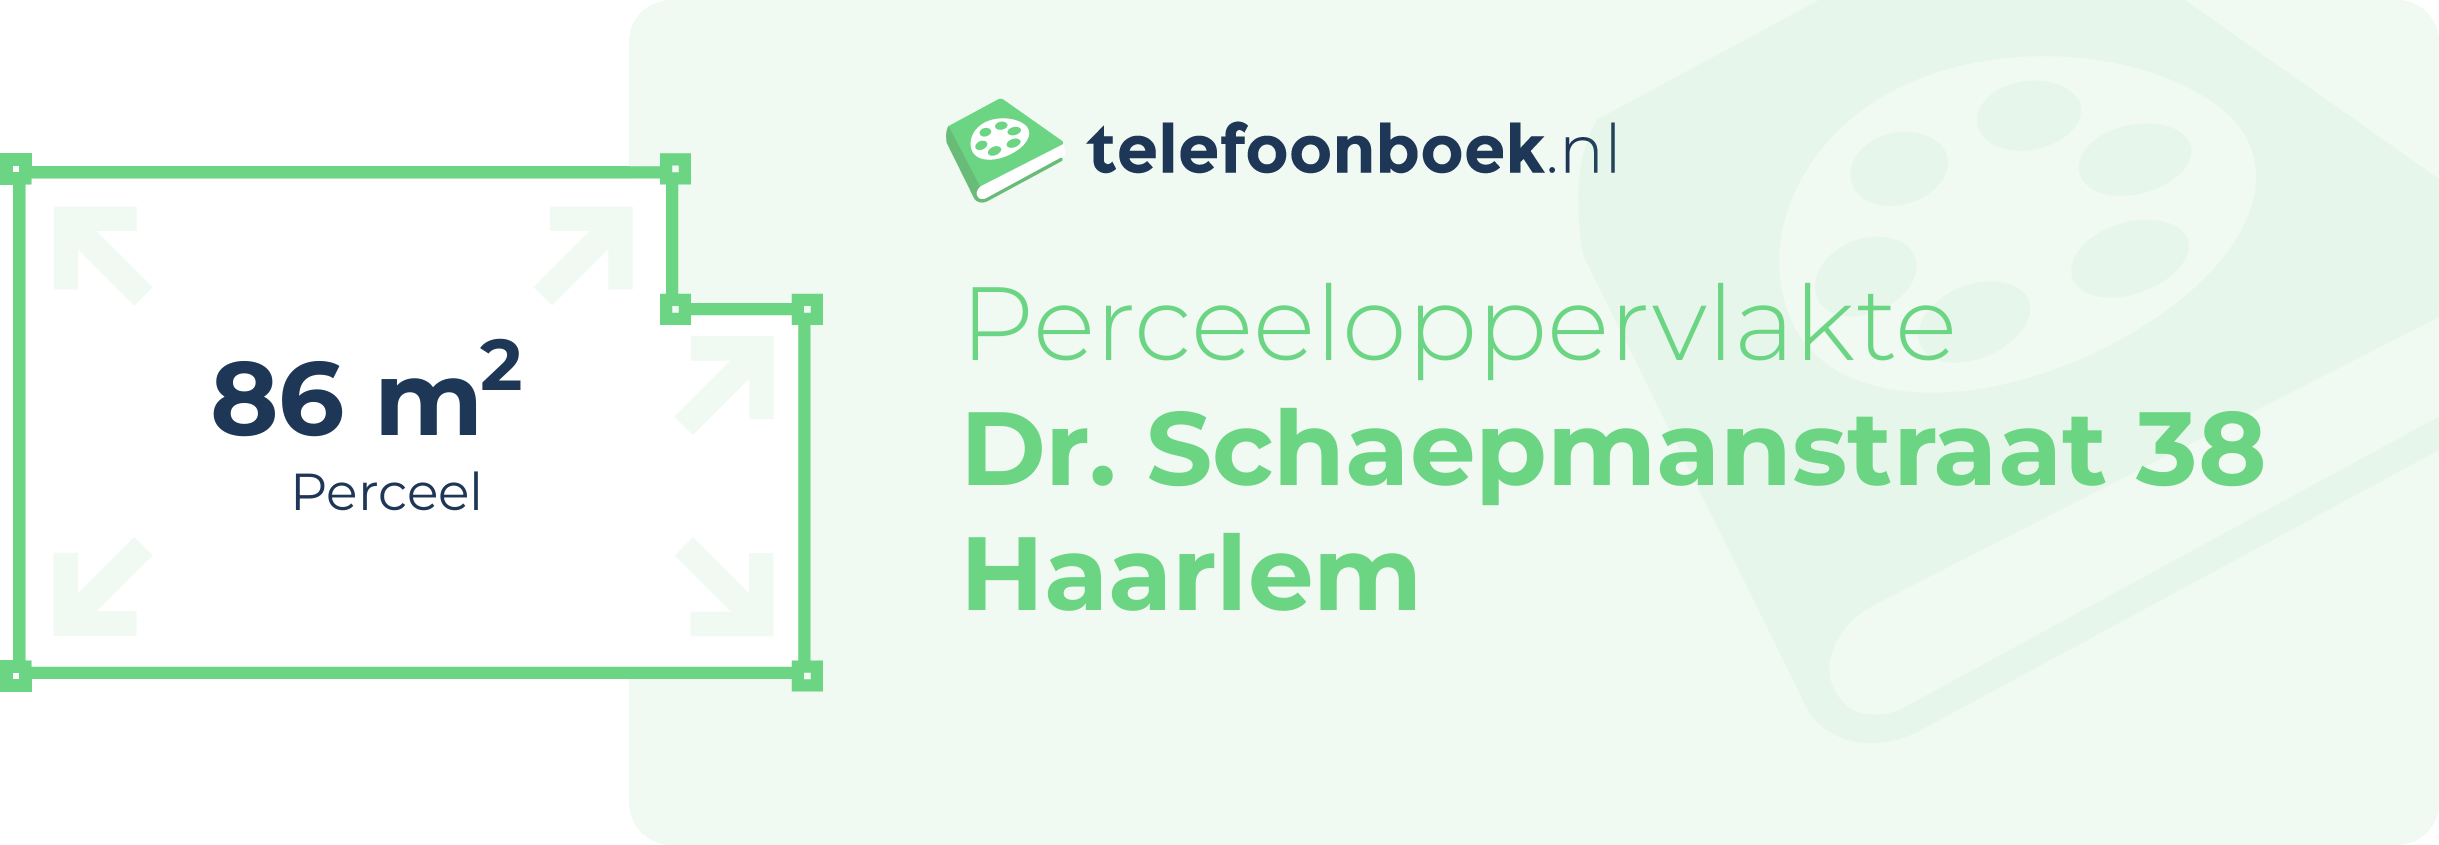 Perceeloppervlakte Dr. Schaepmanstraat 38 Haarlem